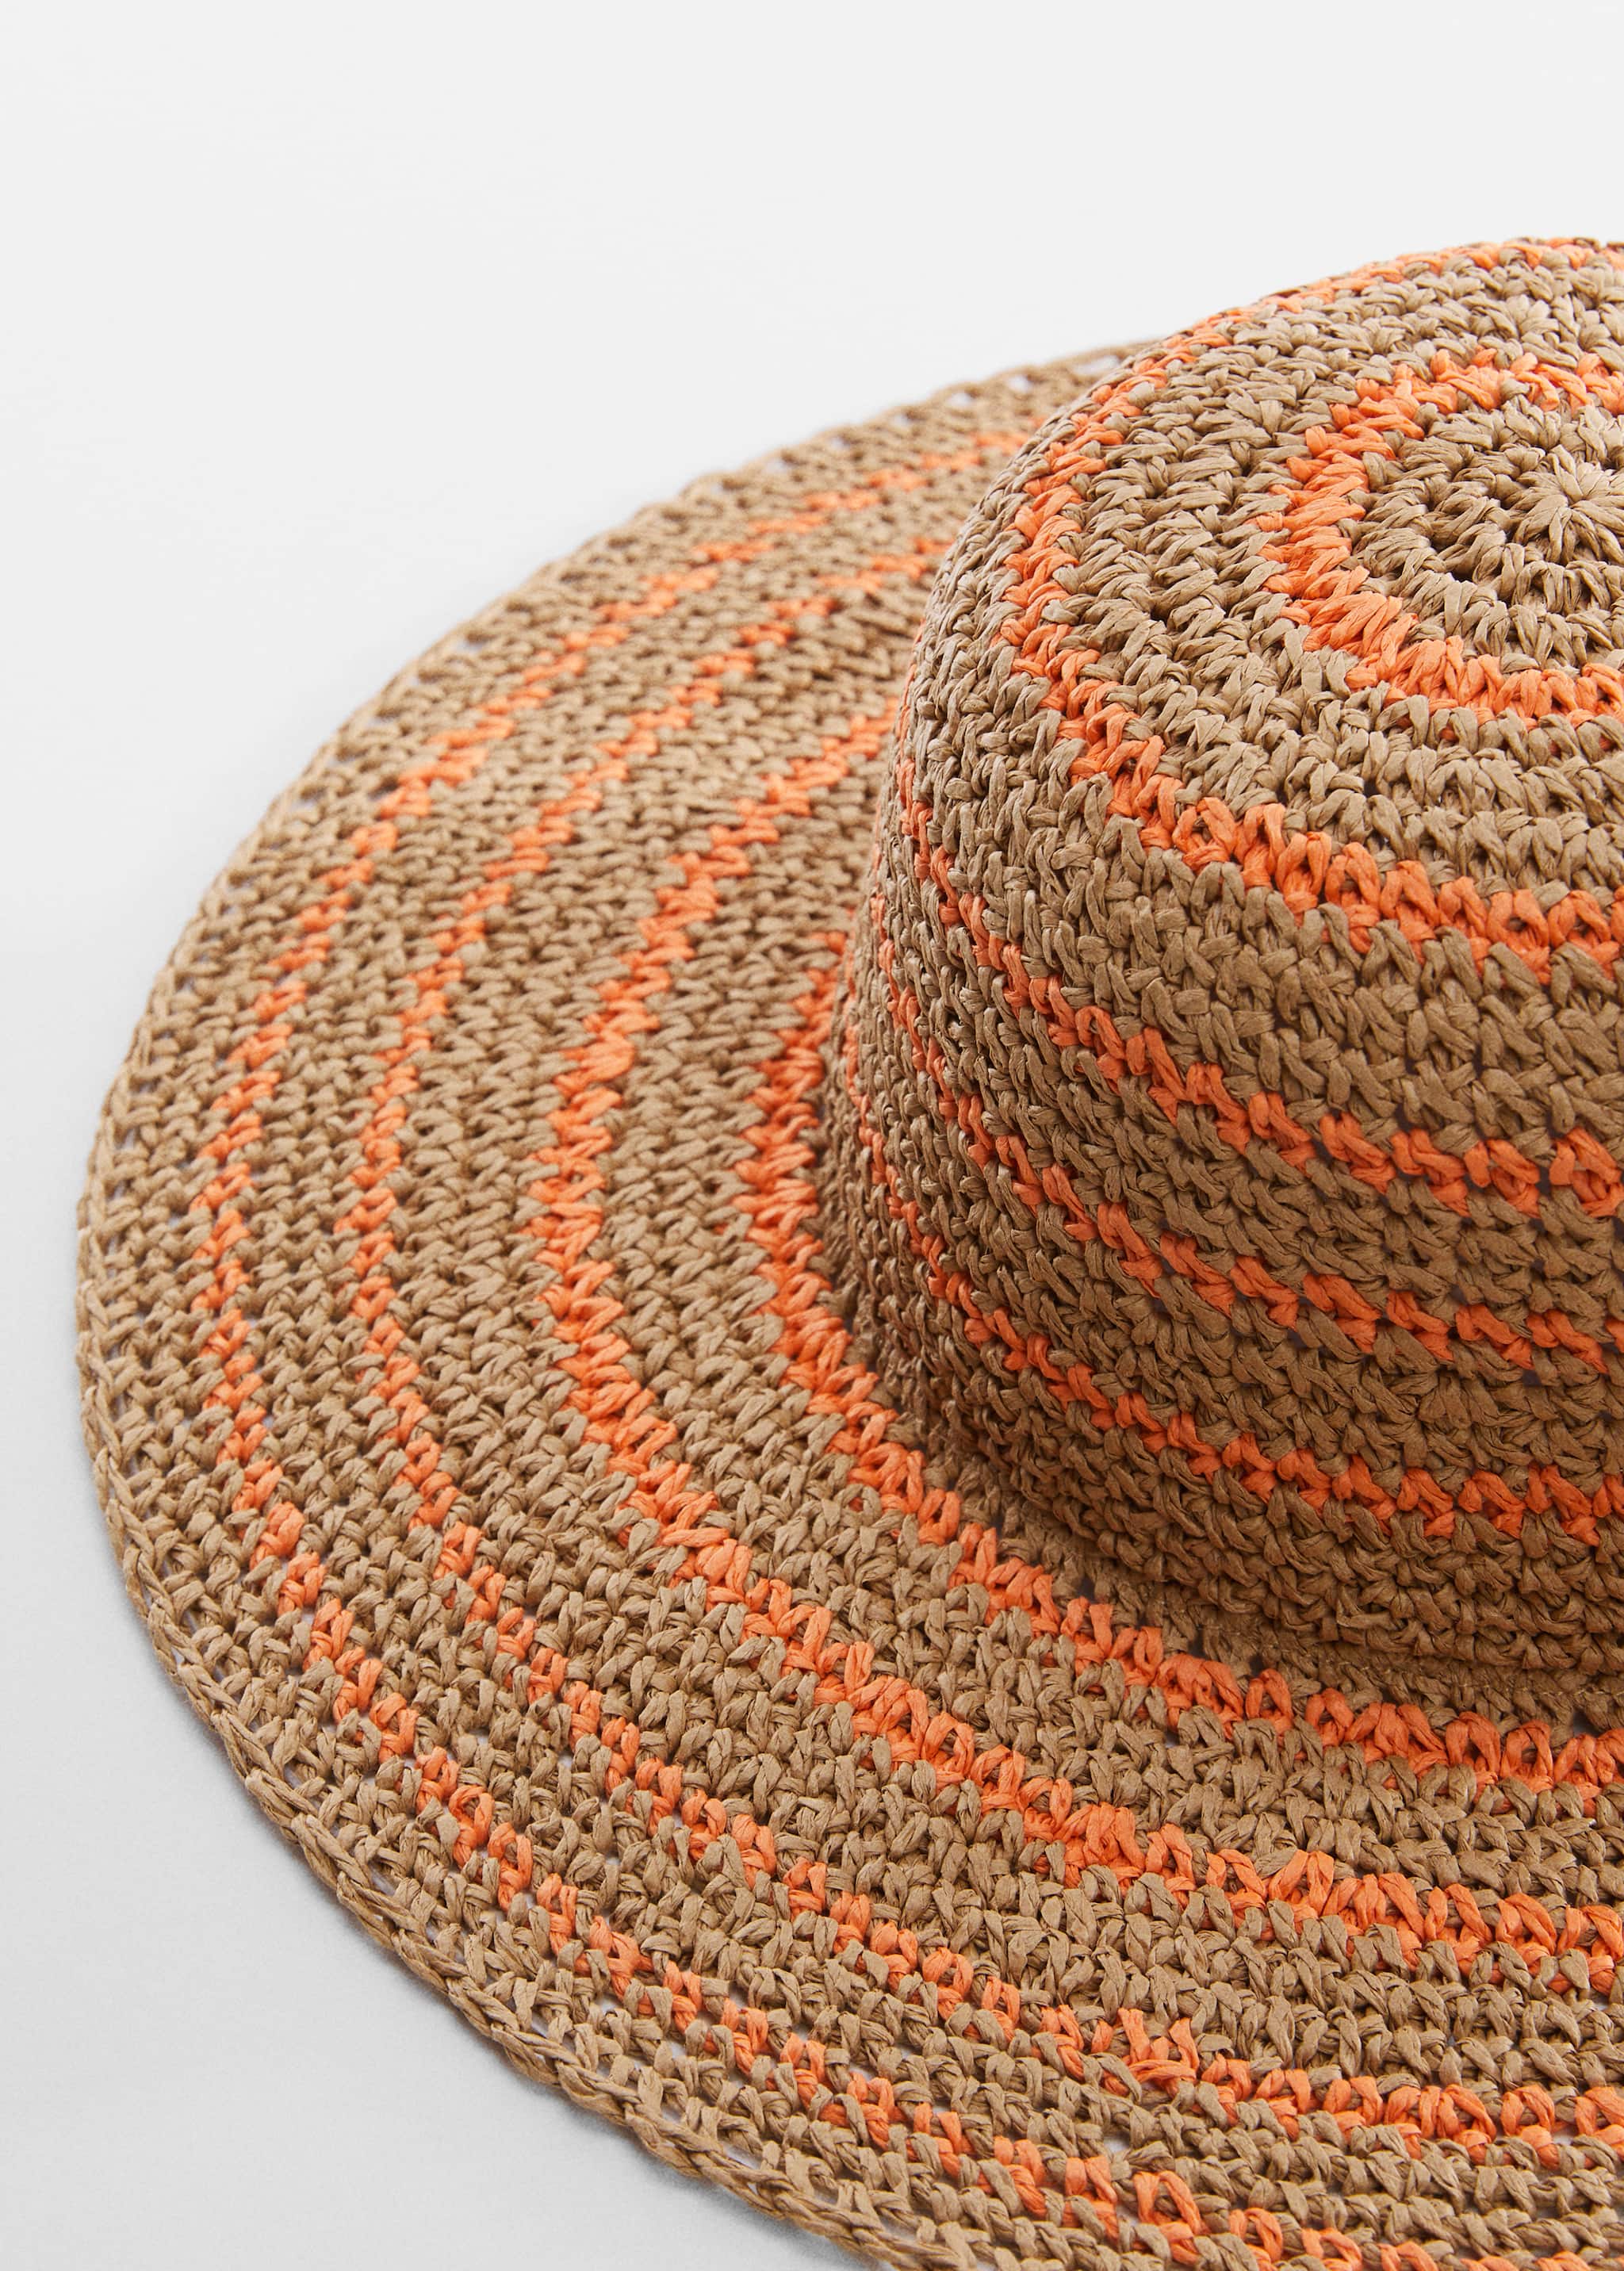 Two-tone natural fibre hat - Medium plane